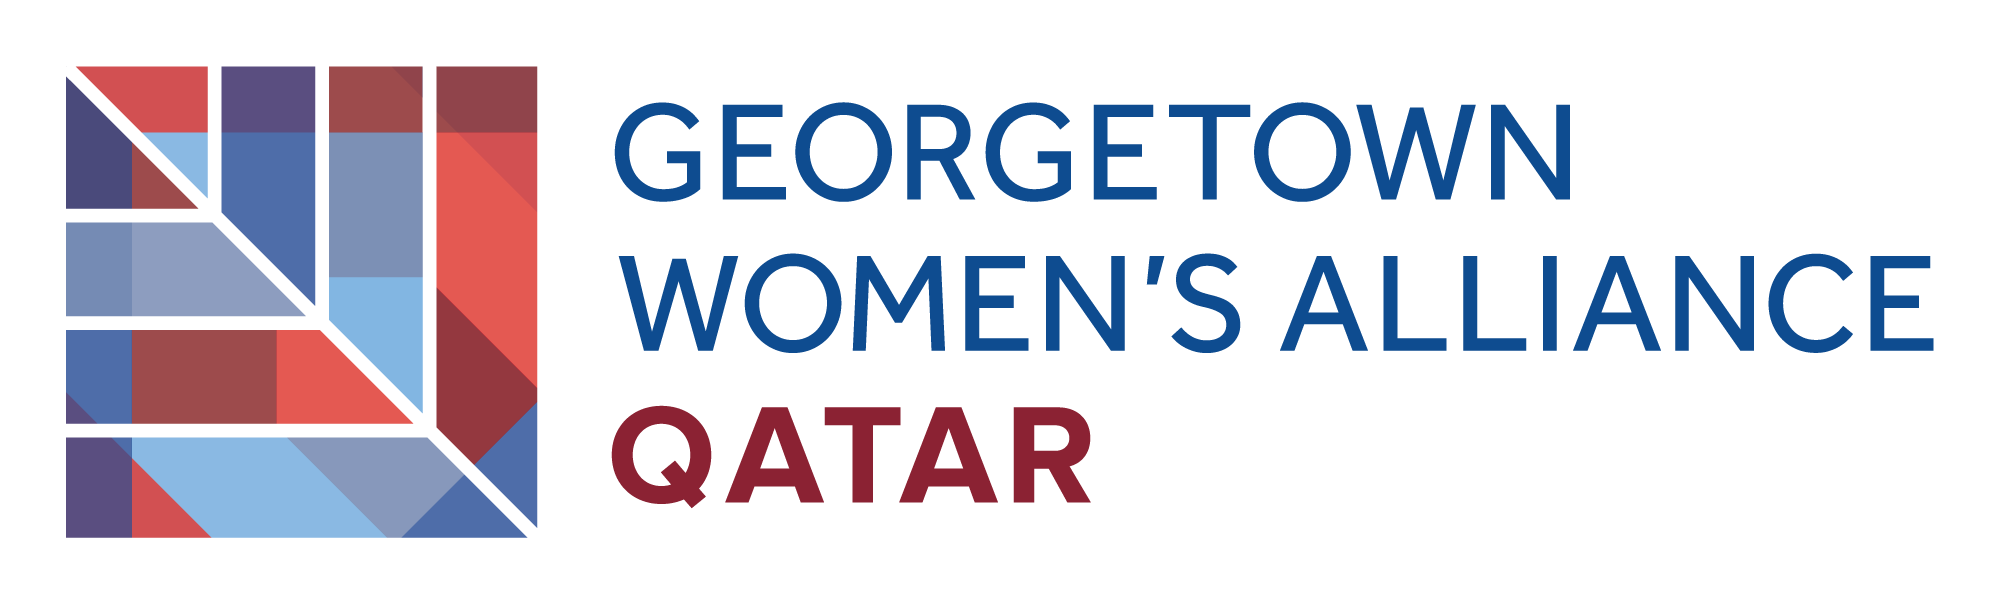 Georgetown Women's Alliance Qatar